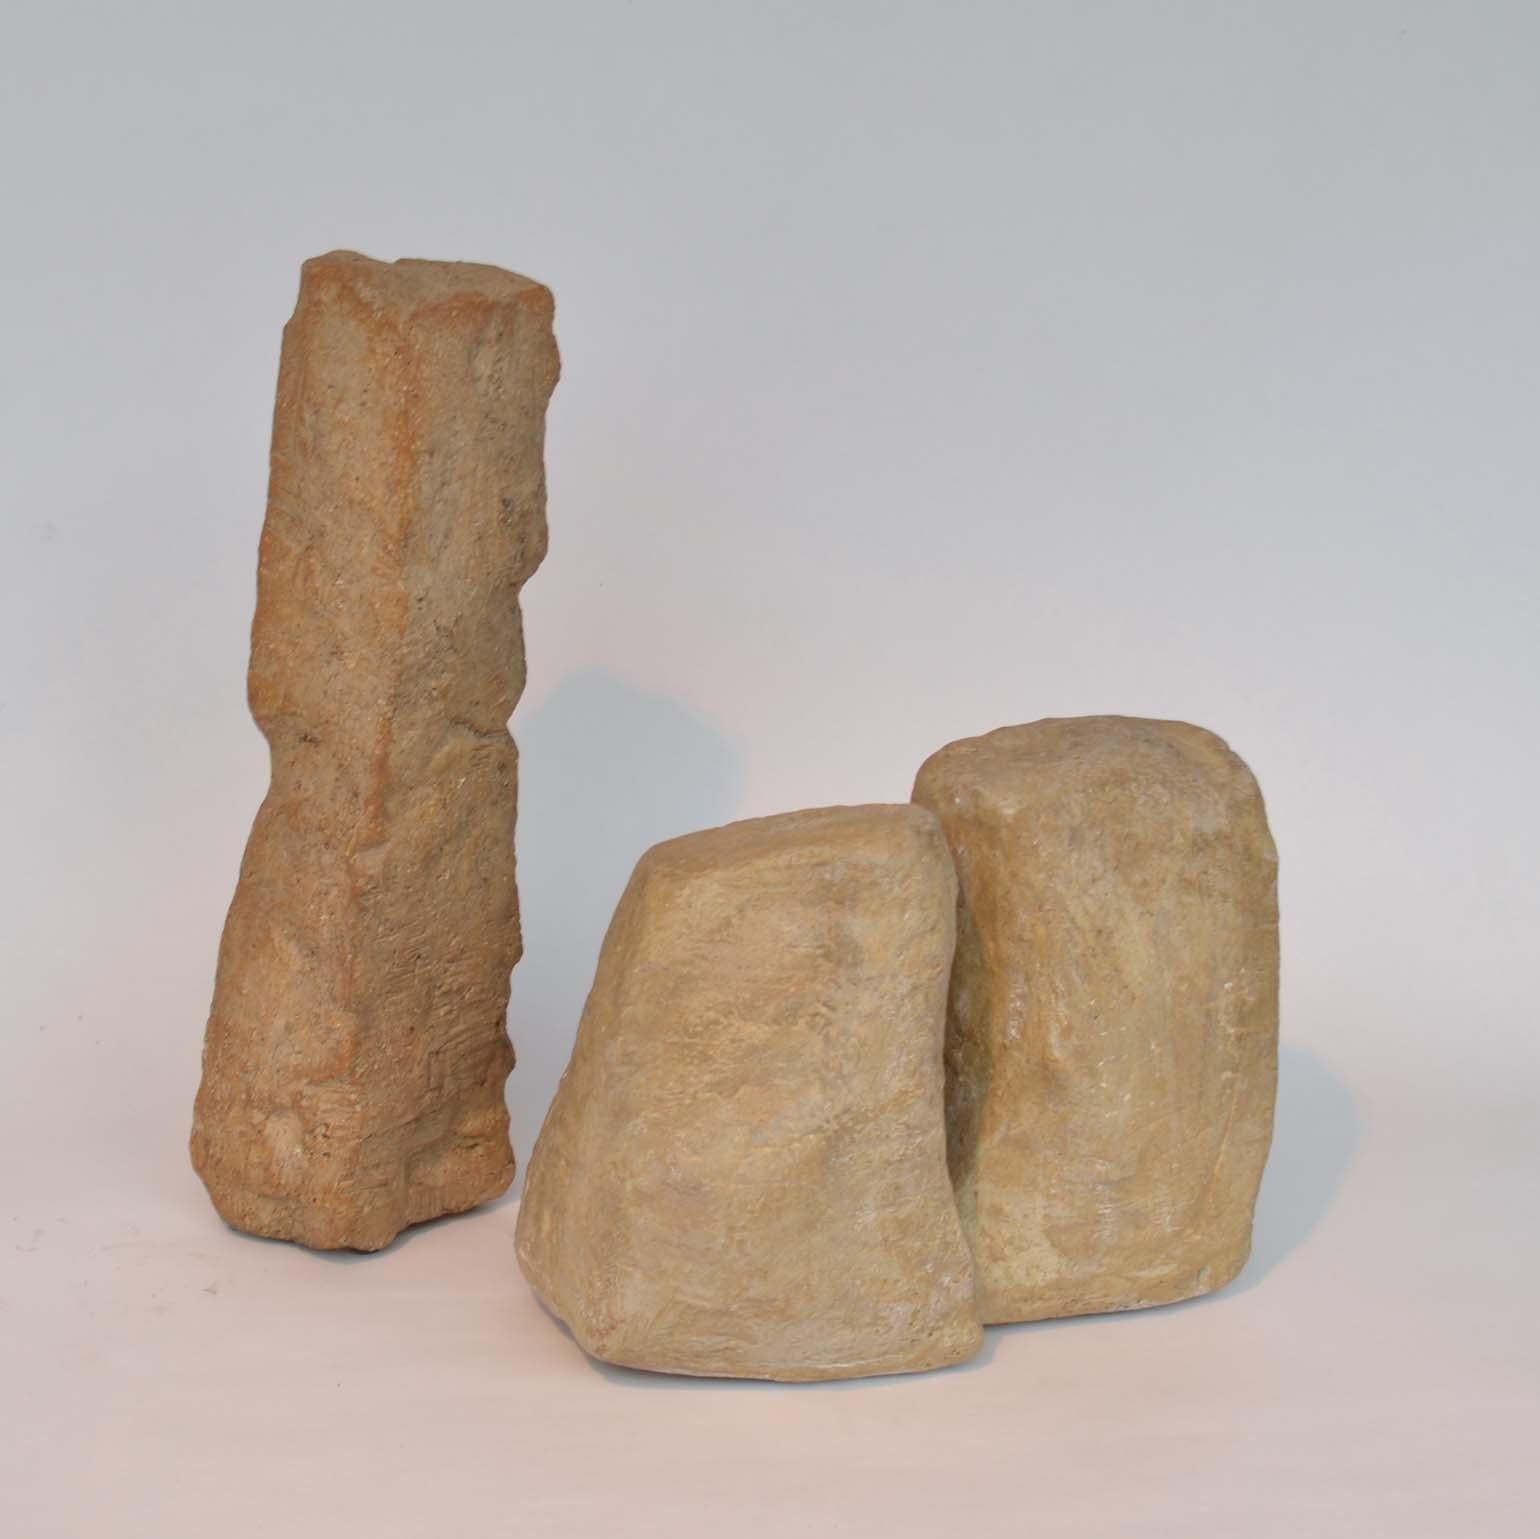 sandstone rock for sale